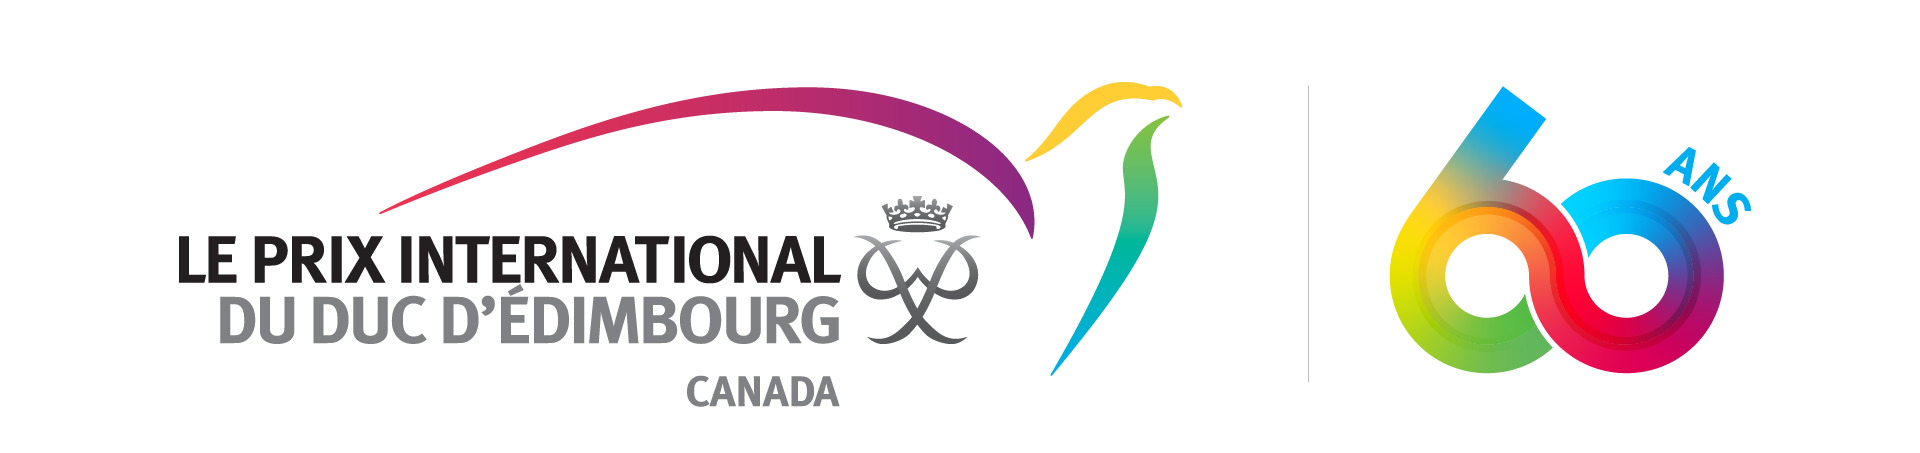 Le Prix international du Duc d'Édimbourg Canada